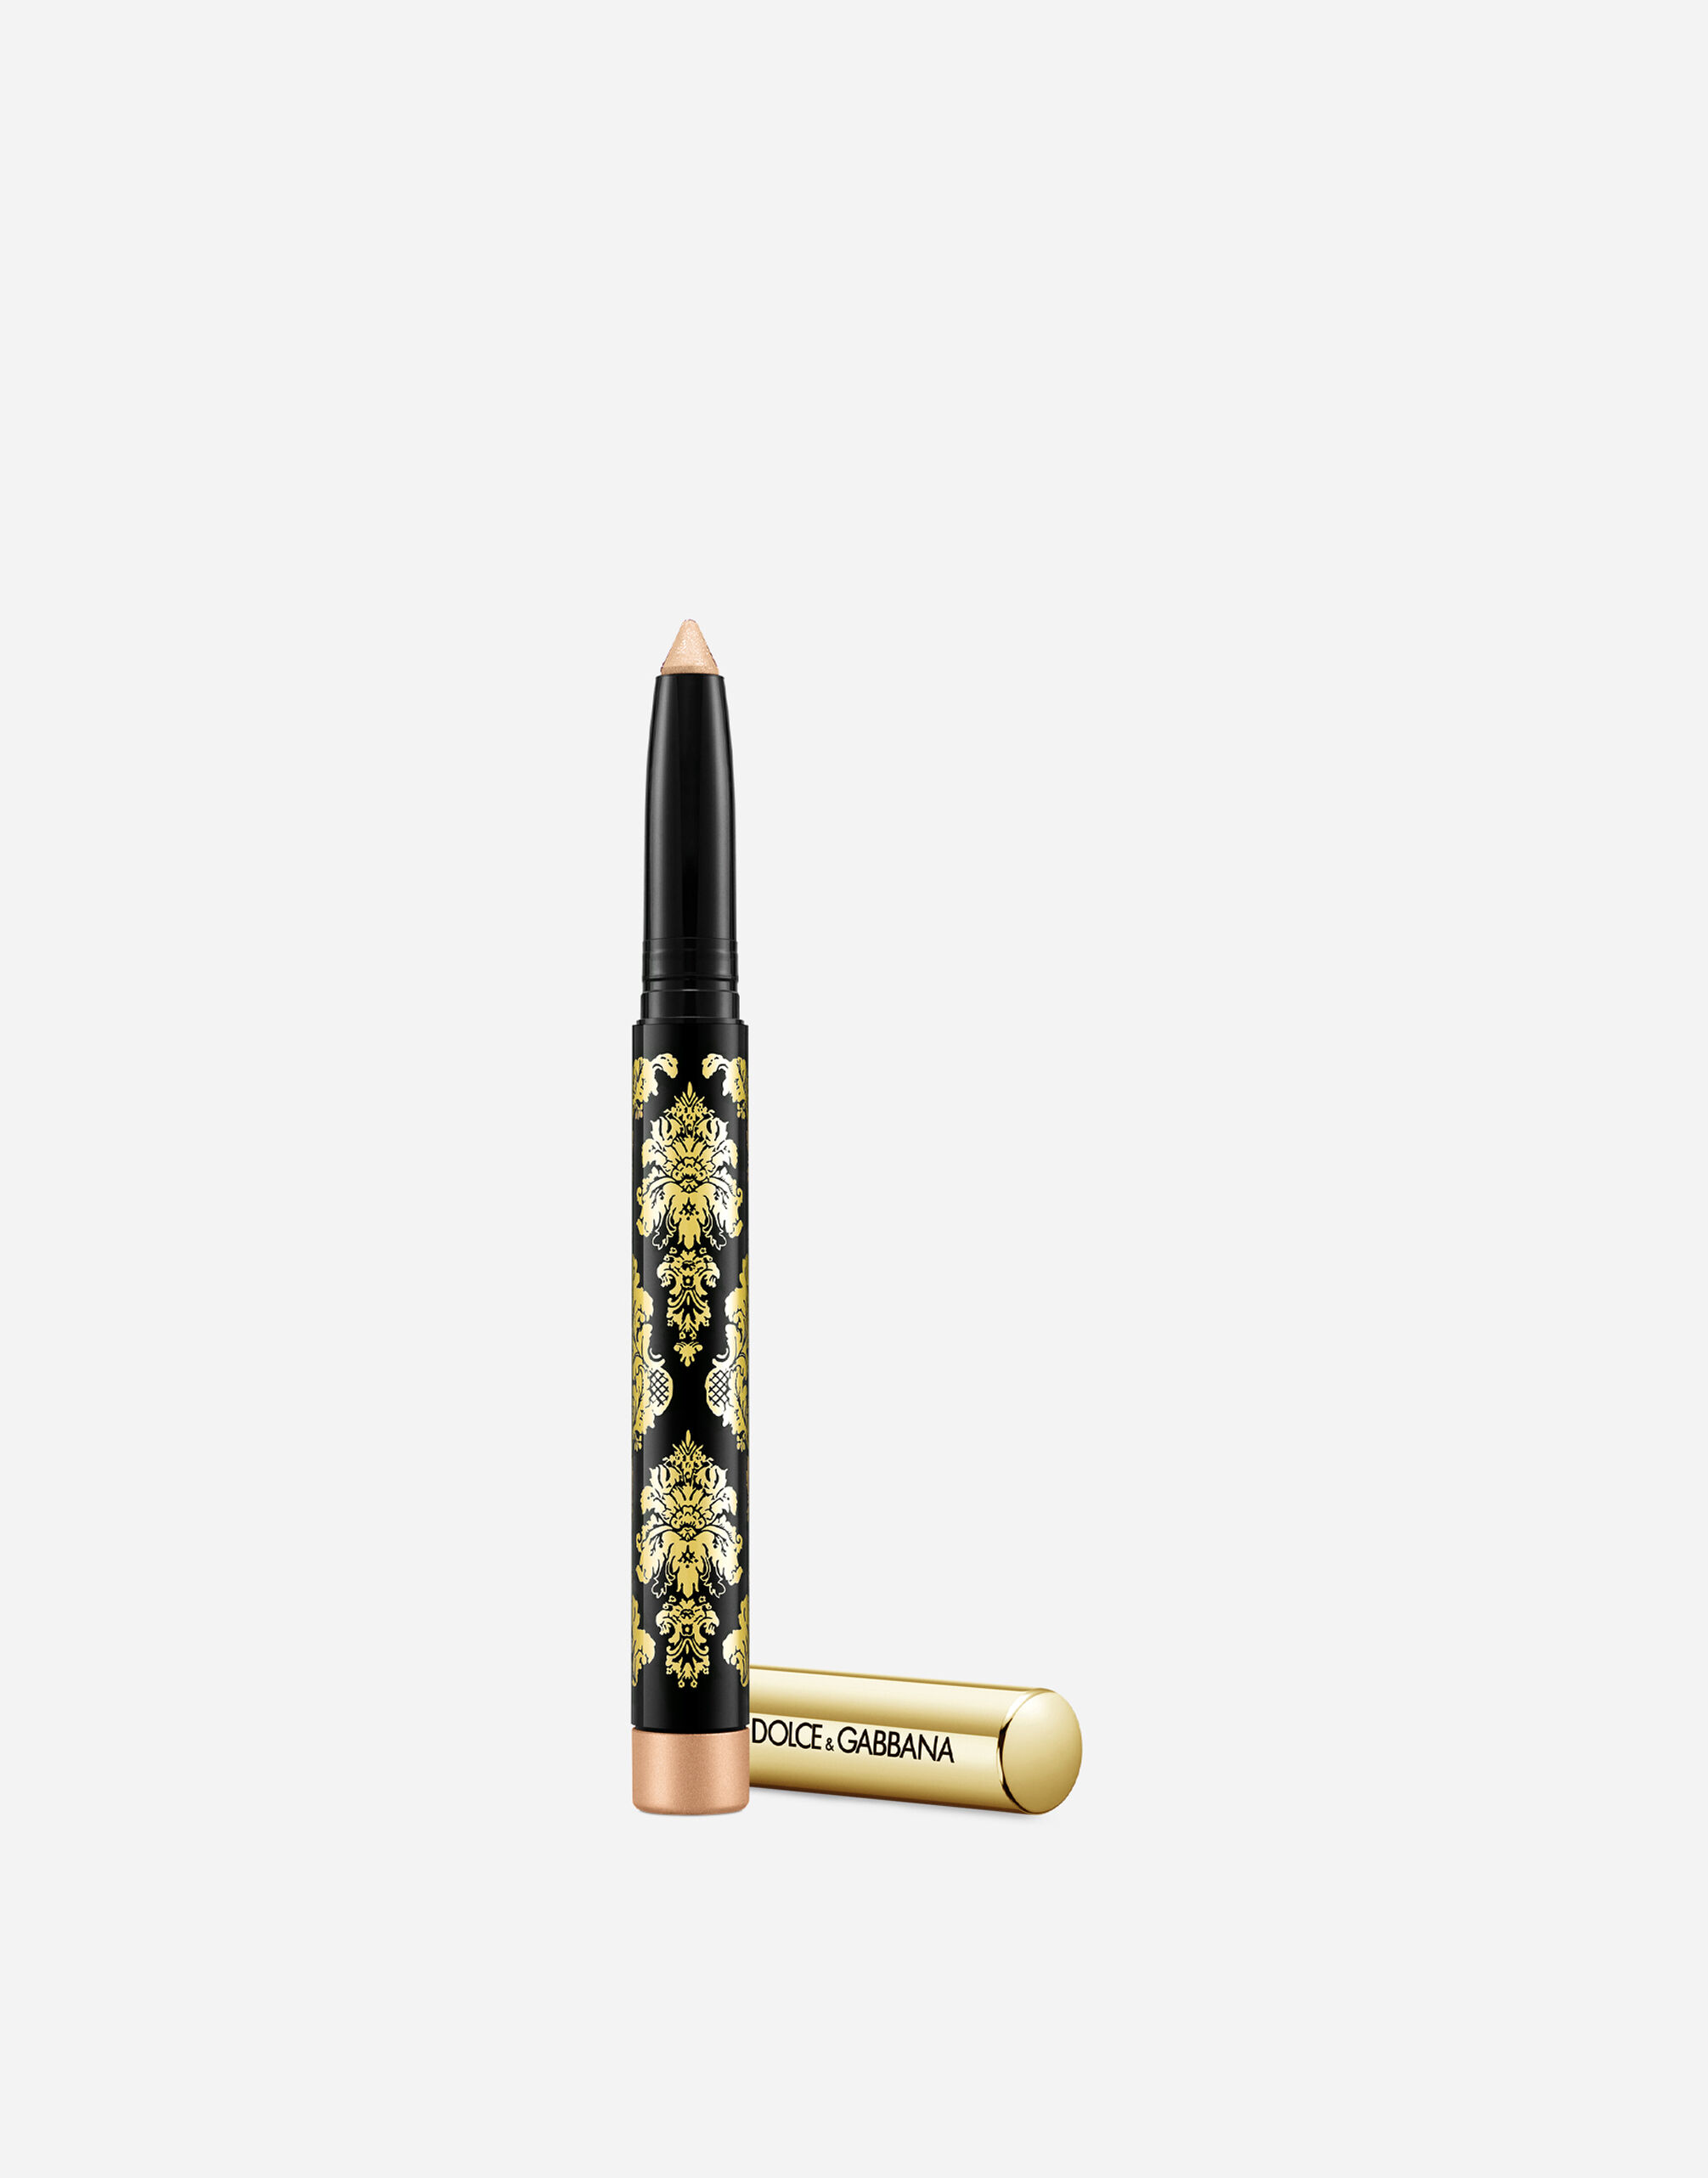 Тени-карандаш для глаз Dolce & Gabbana Intenseyes кремовые, №7 Shimmer, 1,4 г artdeco тени карандаш для глаз smooth eyeshadow stick